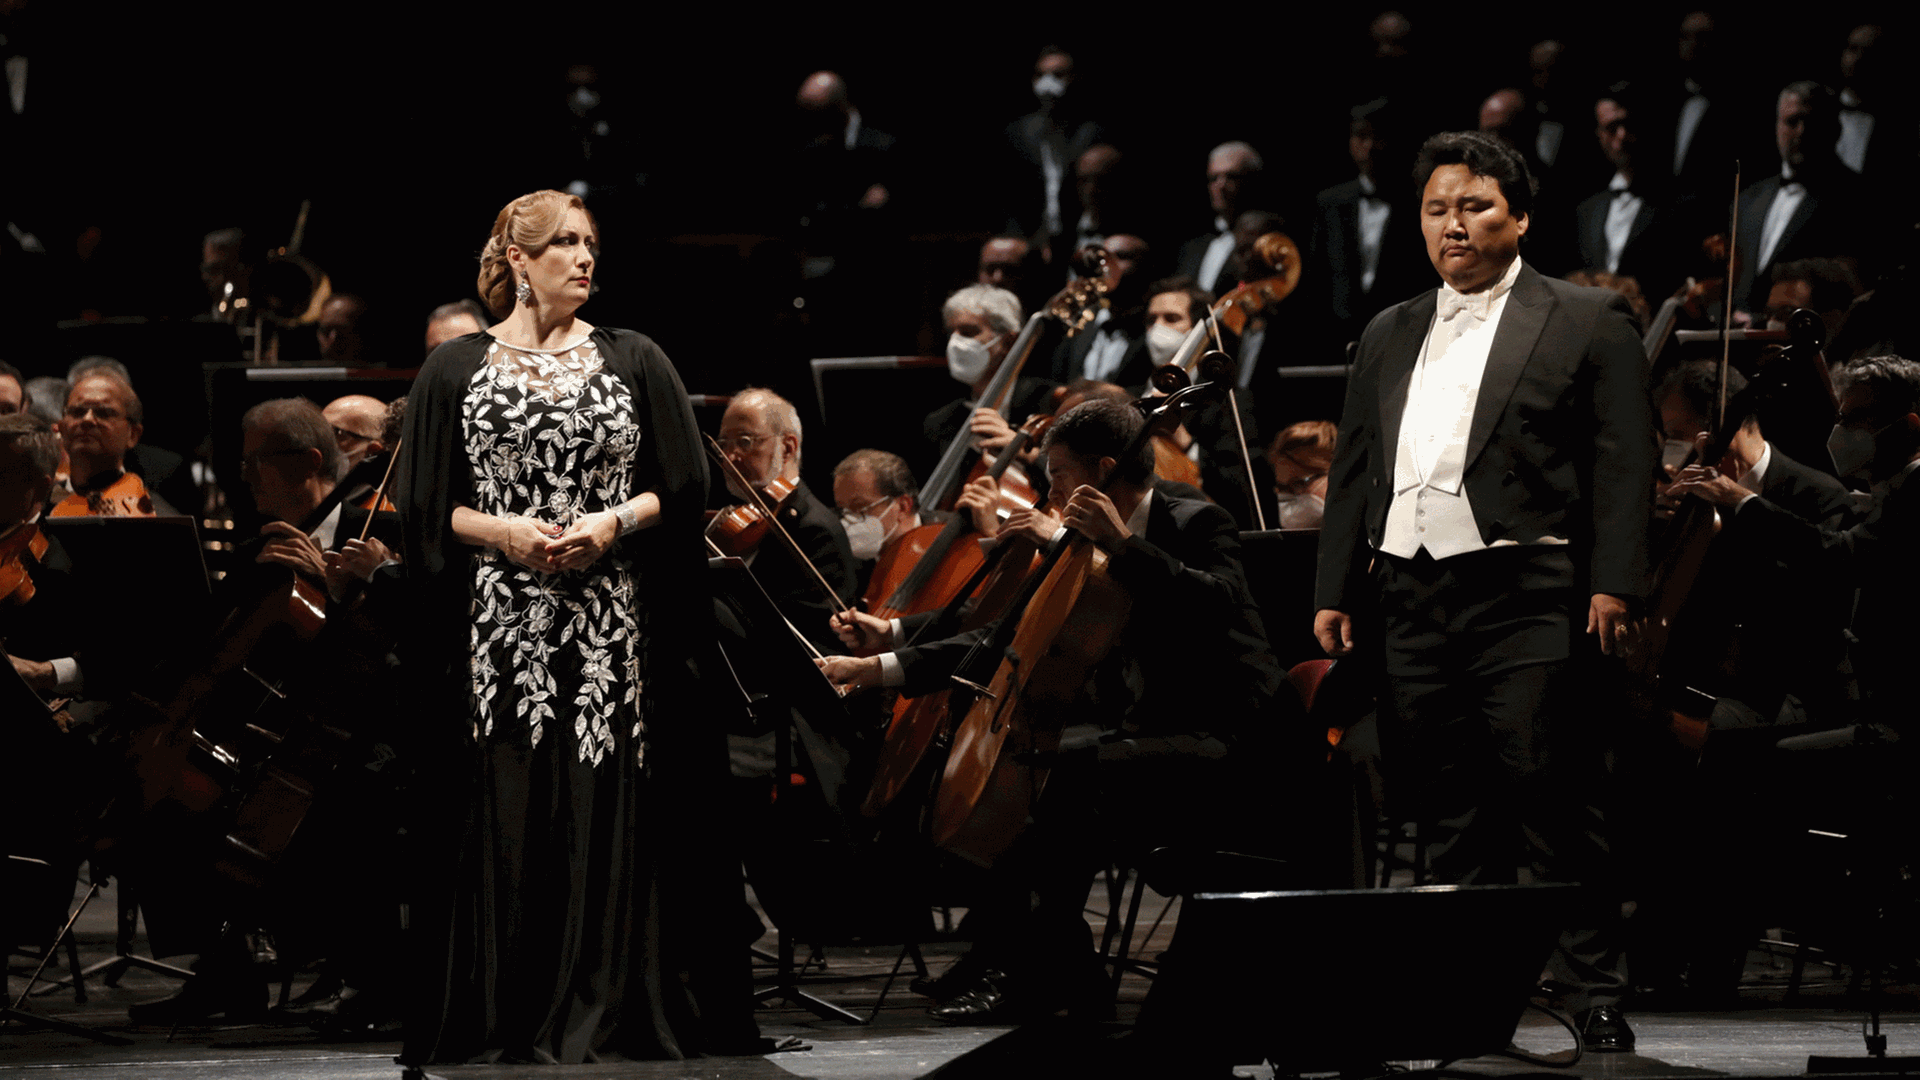 Die Sopranistin Saioa Hernandez als Aida und der Bass Amartuvshin Enkhbat als Amonasro in Verdis "Aida" und das Orchester der Mailänder Scala am 15.10.2020 in Mailand